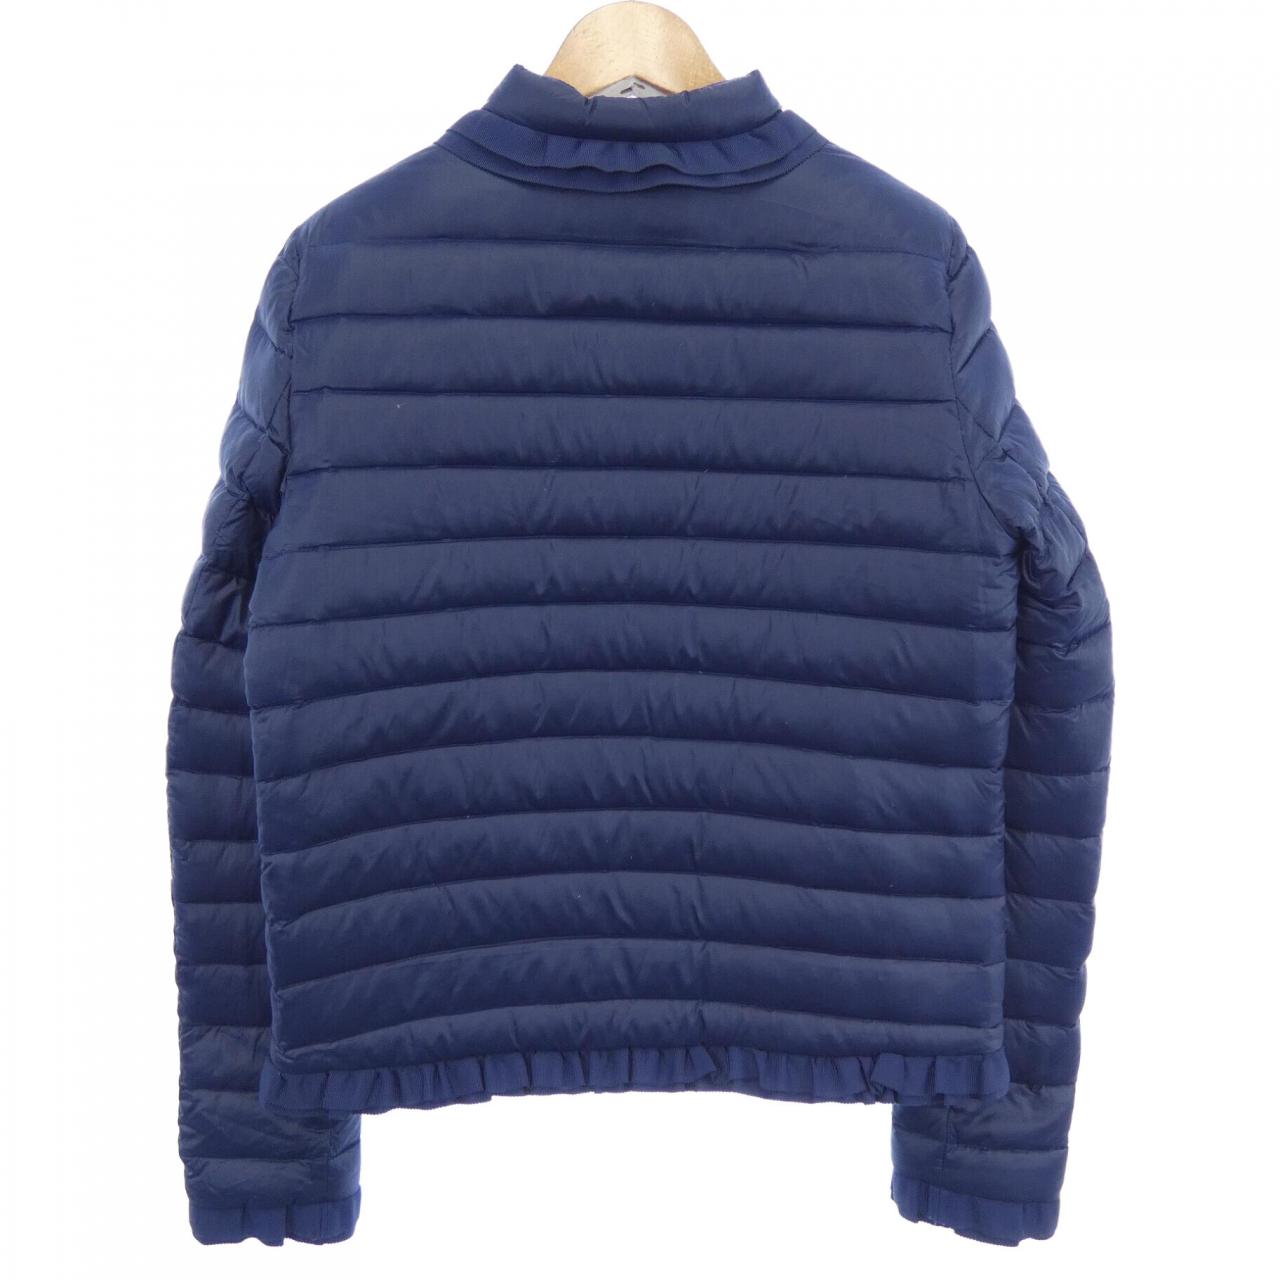 LANVIN on Blue ウールジャケットコートその為価格を加味しております